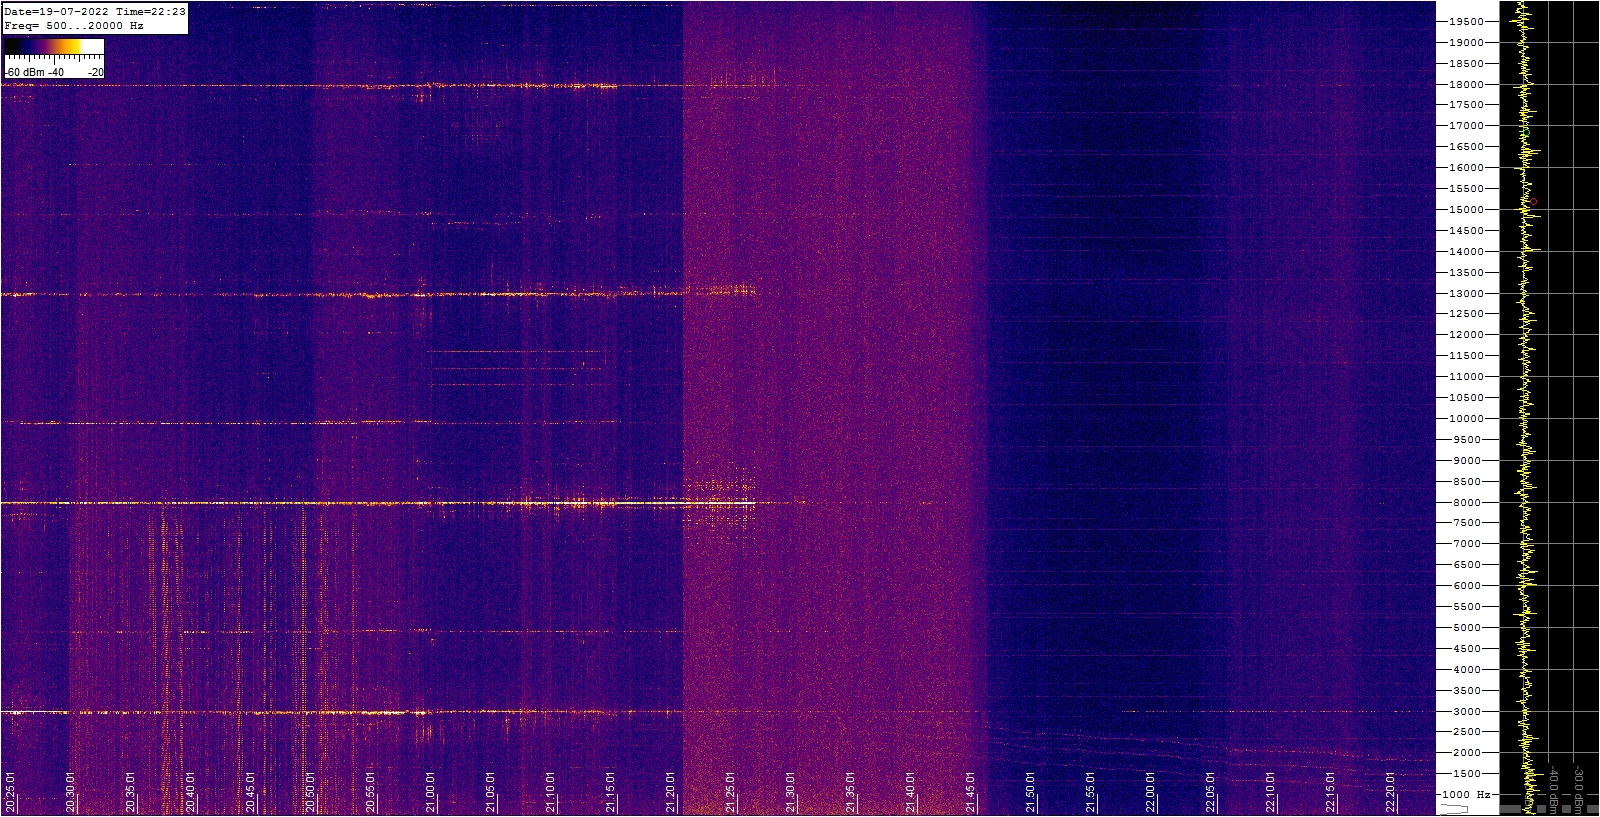 Spettrogramma che mostra il disturbo di rumore a 25.5 MHz, dovuto all'attività solare, catturato intorno alle 22 UTC, dalla stazione radio HF.